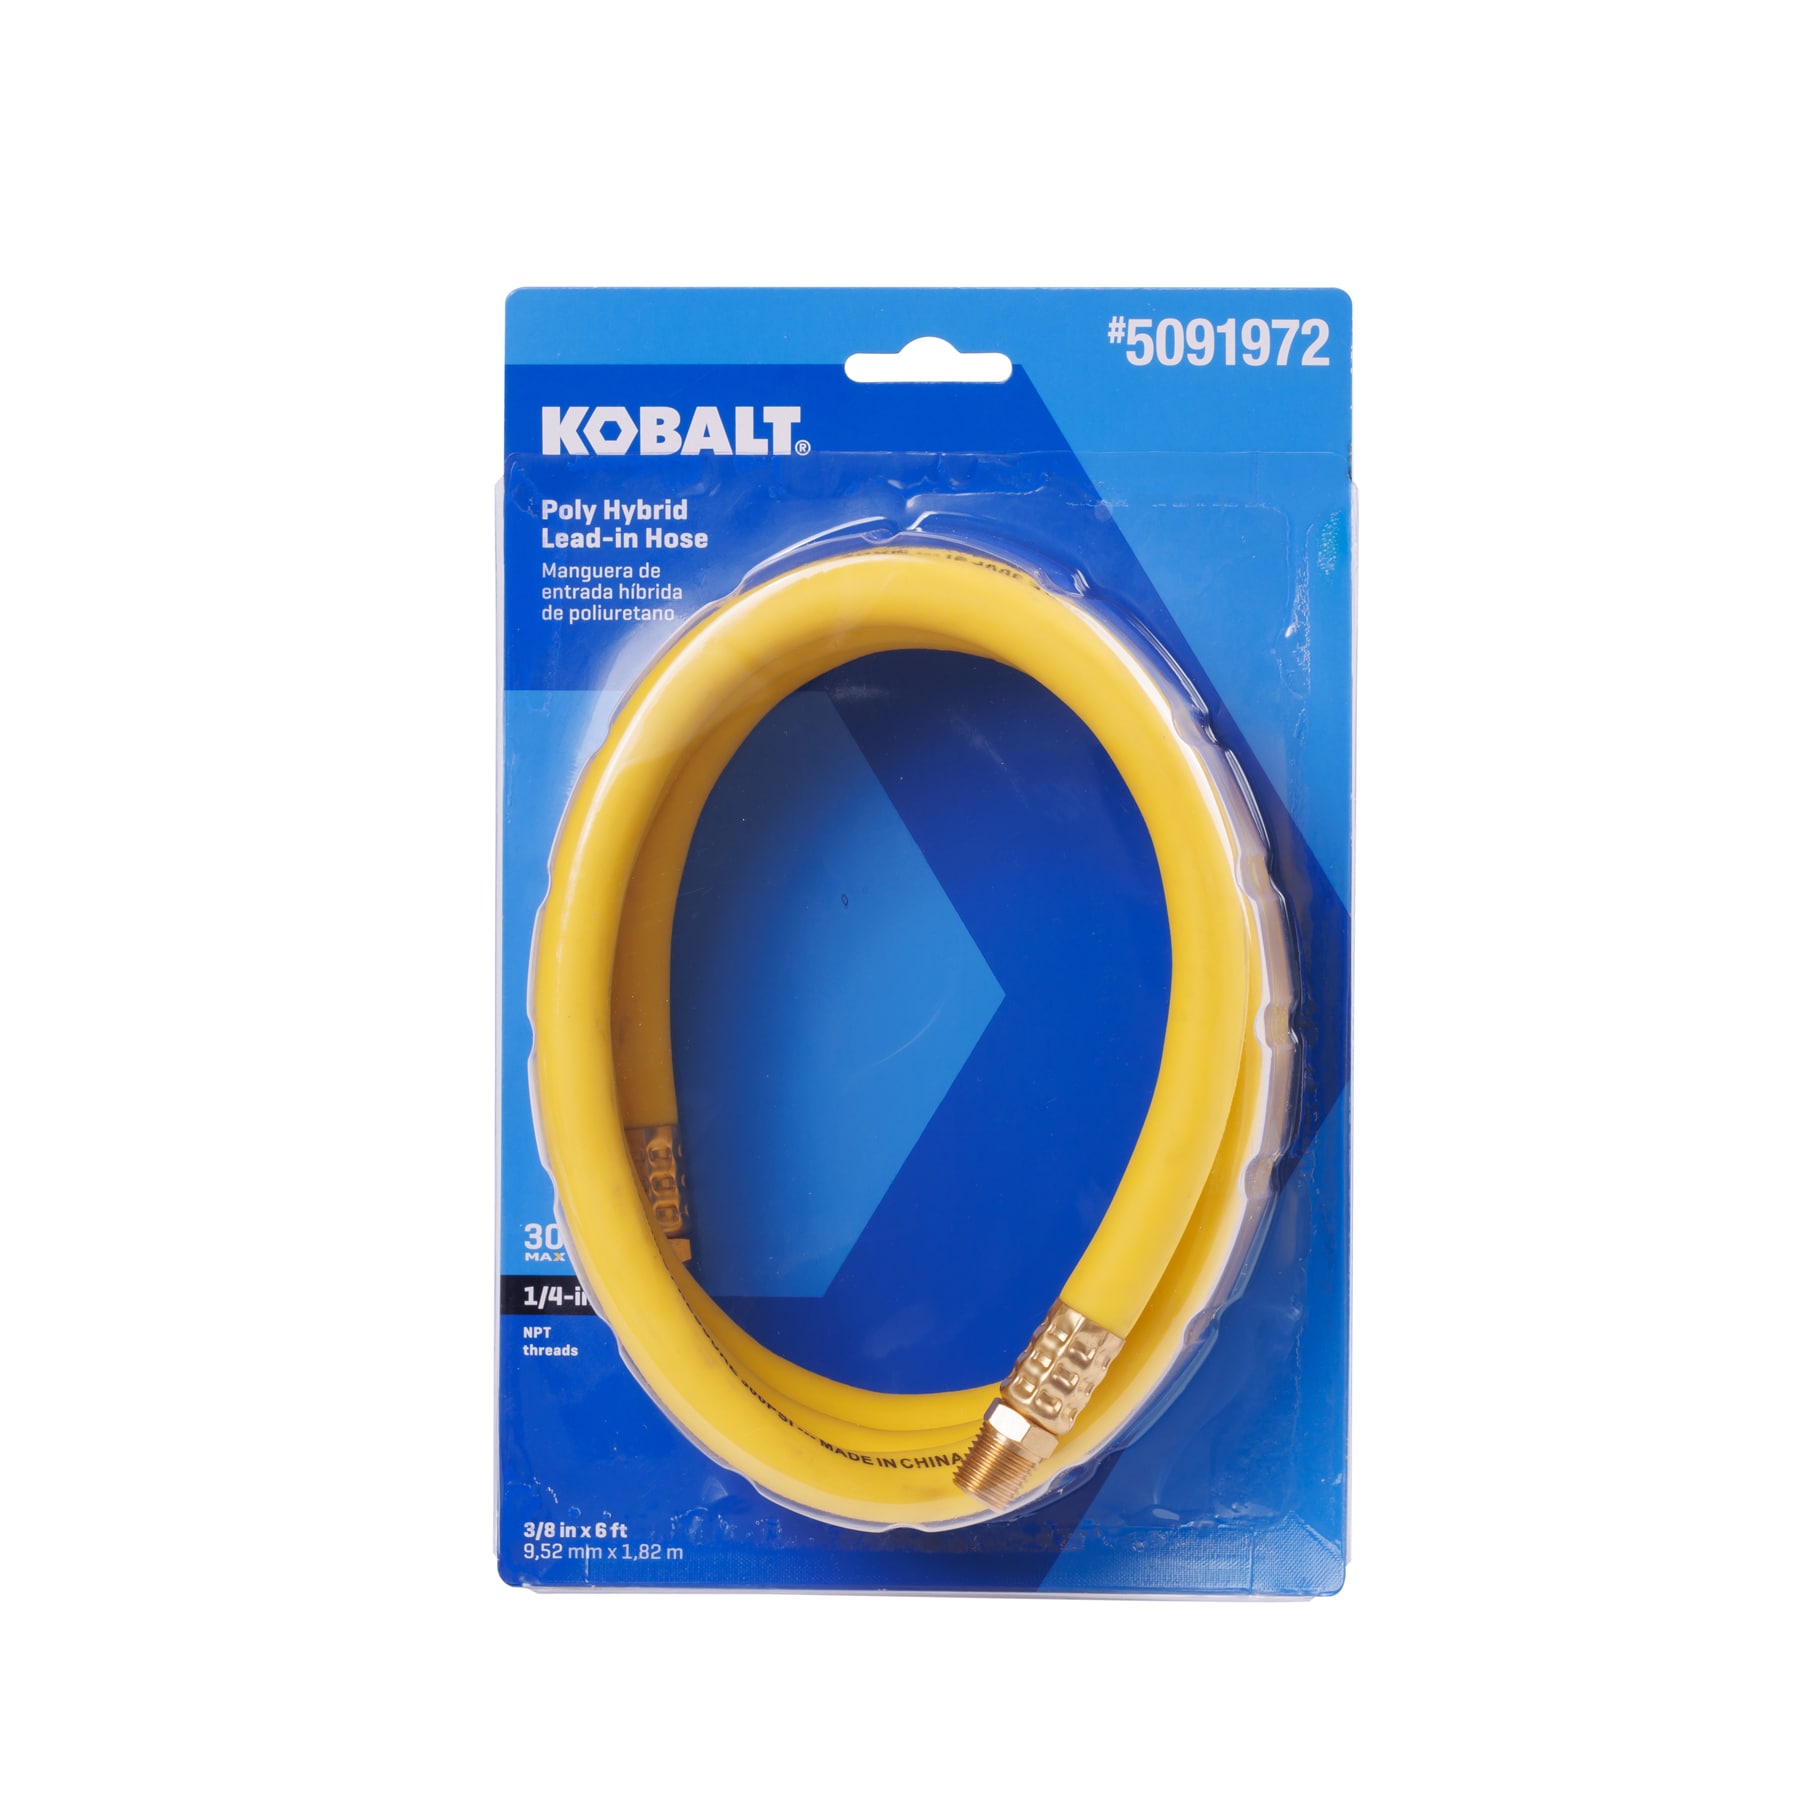 Kobalt Kobalt Retractable Hose Reel with 3/8-in x 50-ft Hybrid Hose at